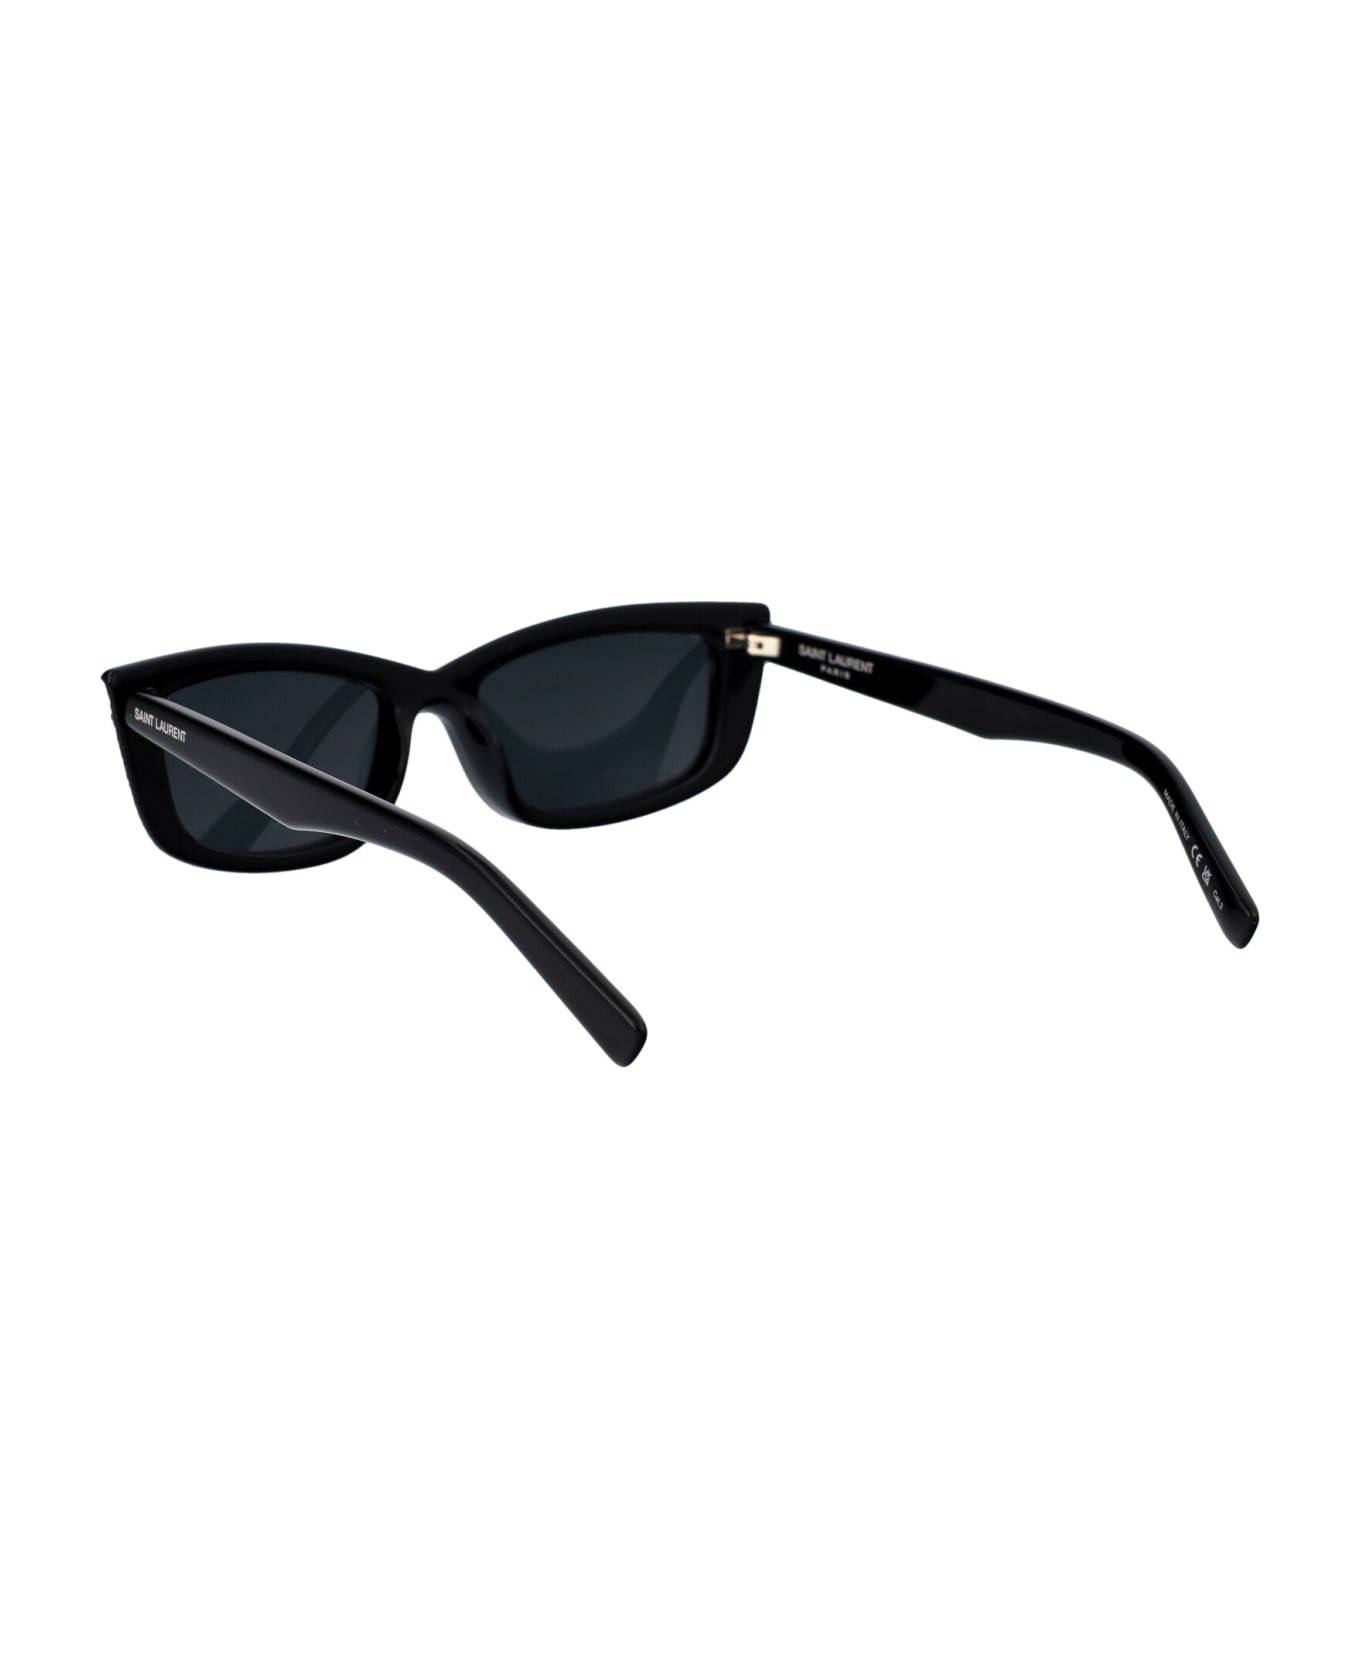 Saint Laurent Eyewear Sl 658 Sunglasses - 001 BLACK BLACK BLACK